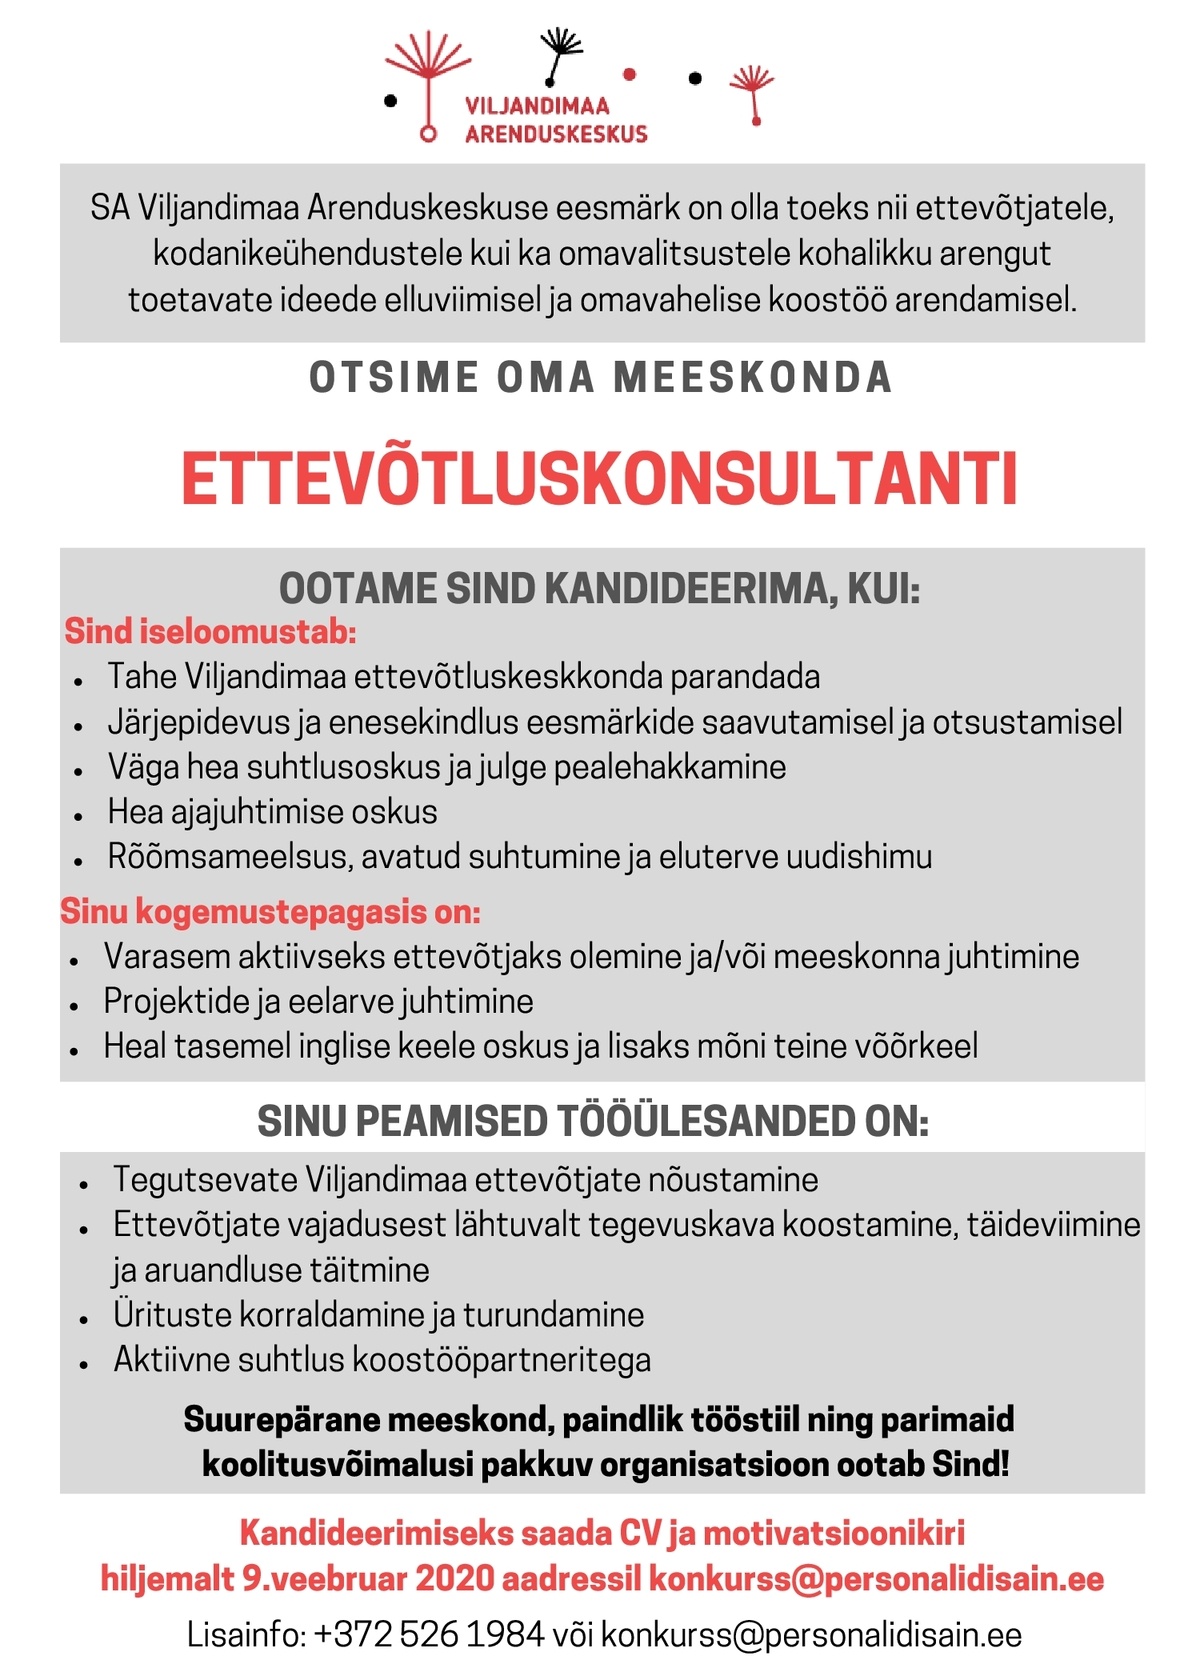 SA Viljandimaa Arenduskeskus Ettevõtluskonsultant